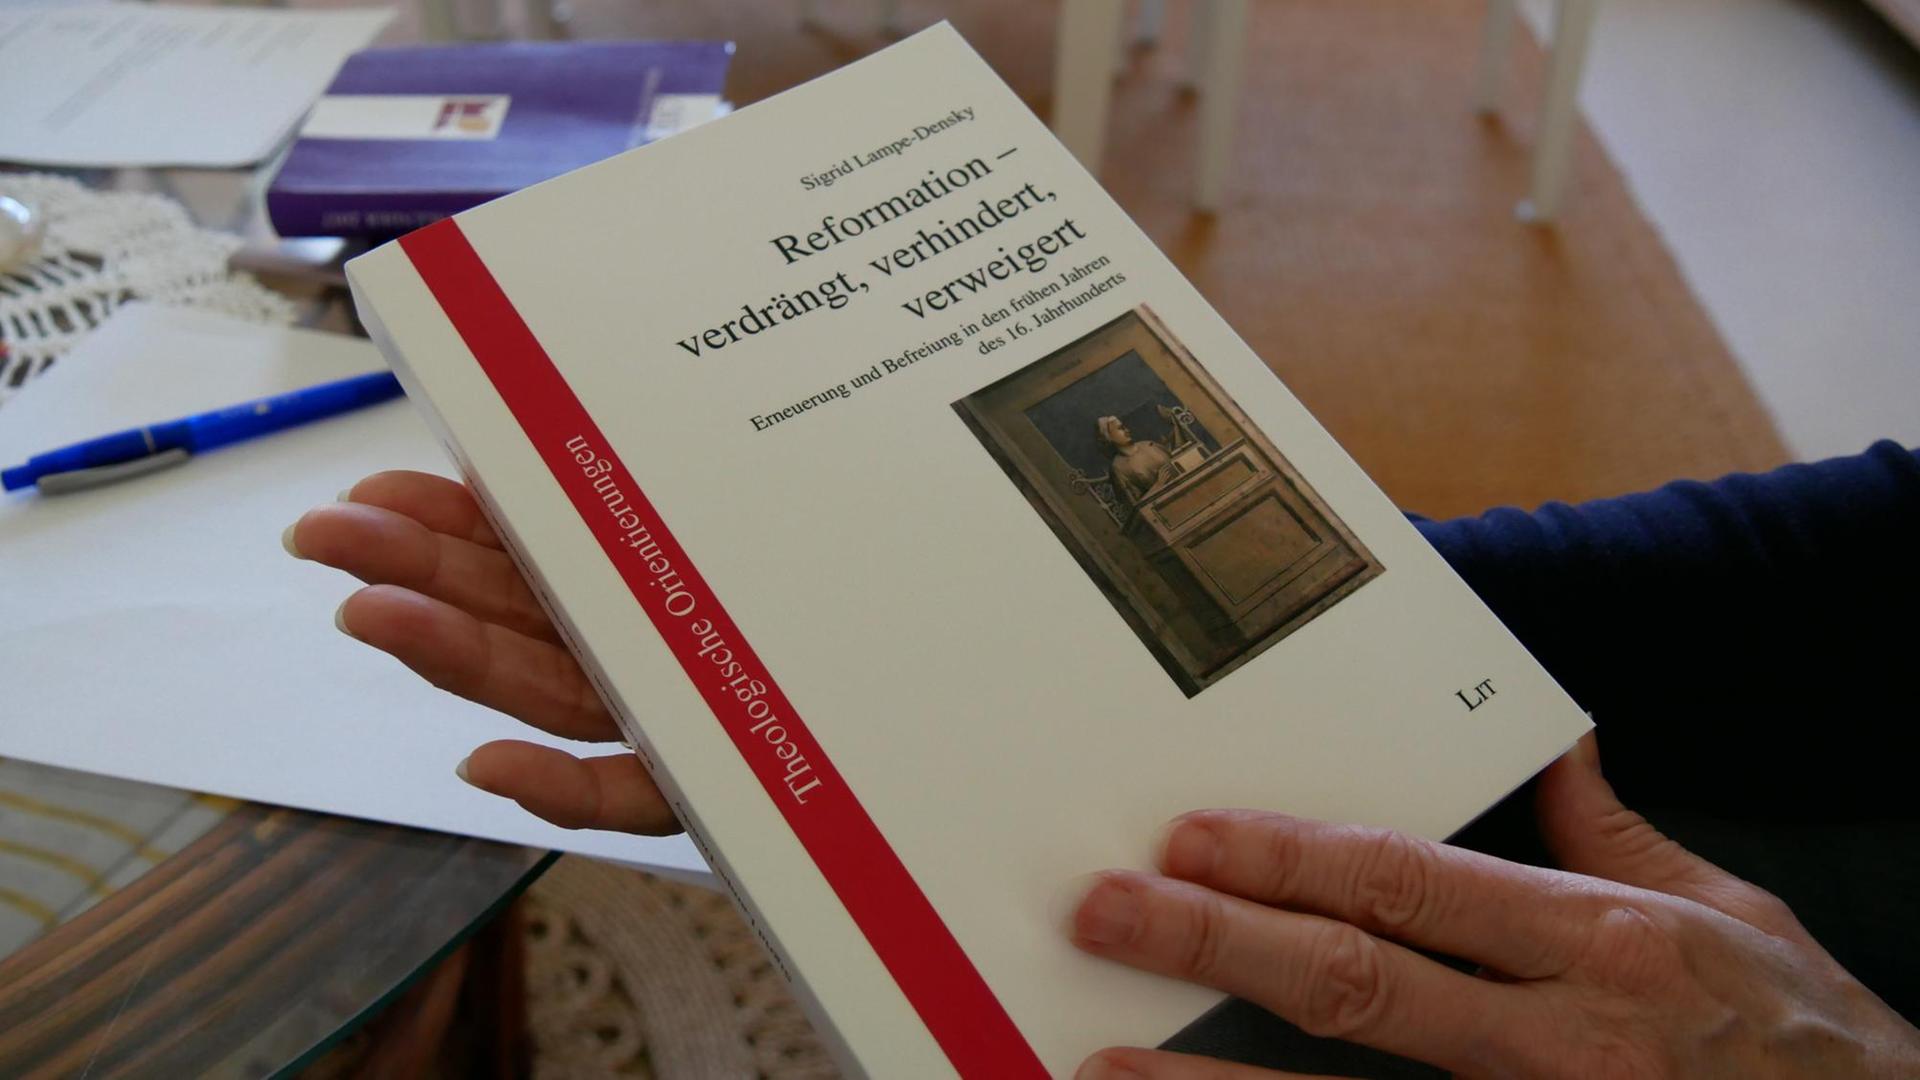 Ein Reformationsbuch ohne Luther: Cover des Titels "Reformation - verdrängt, verhindert, verweigert".